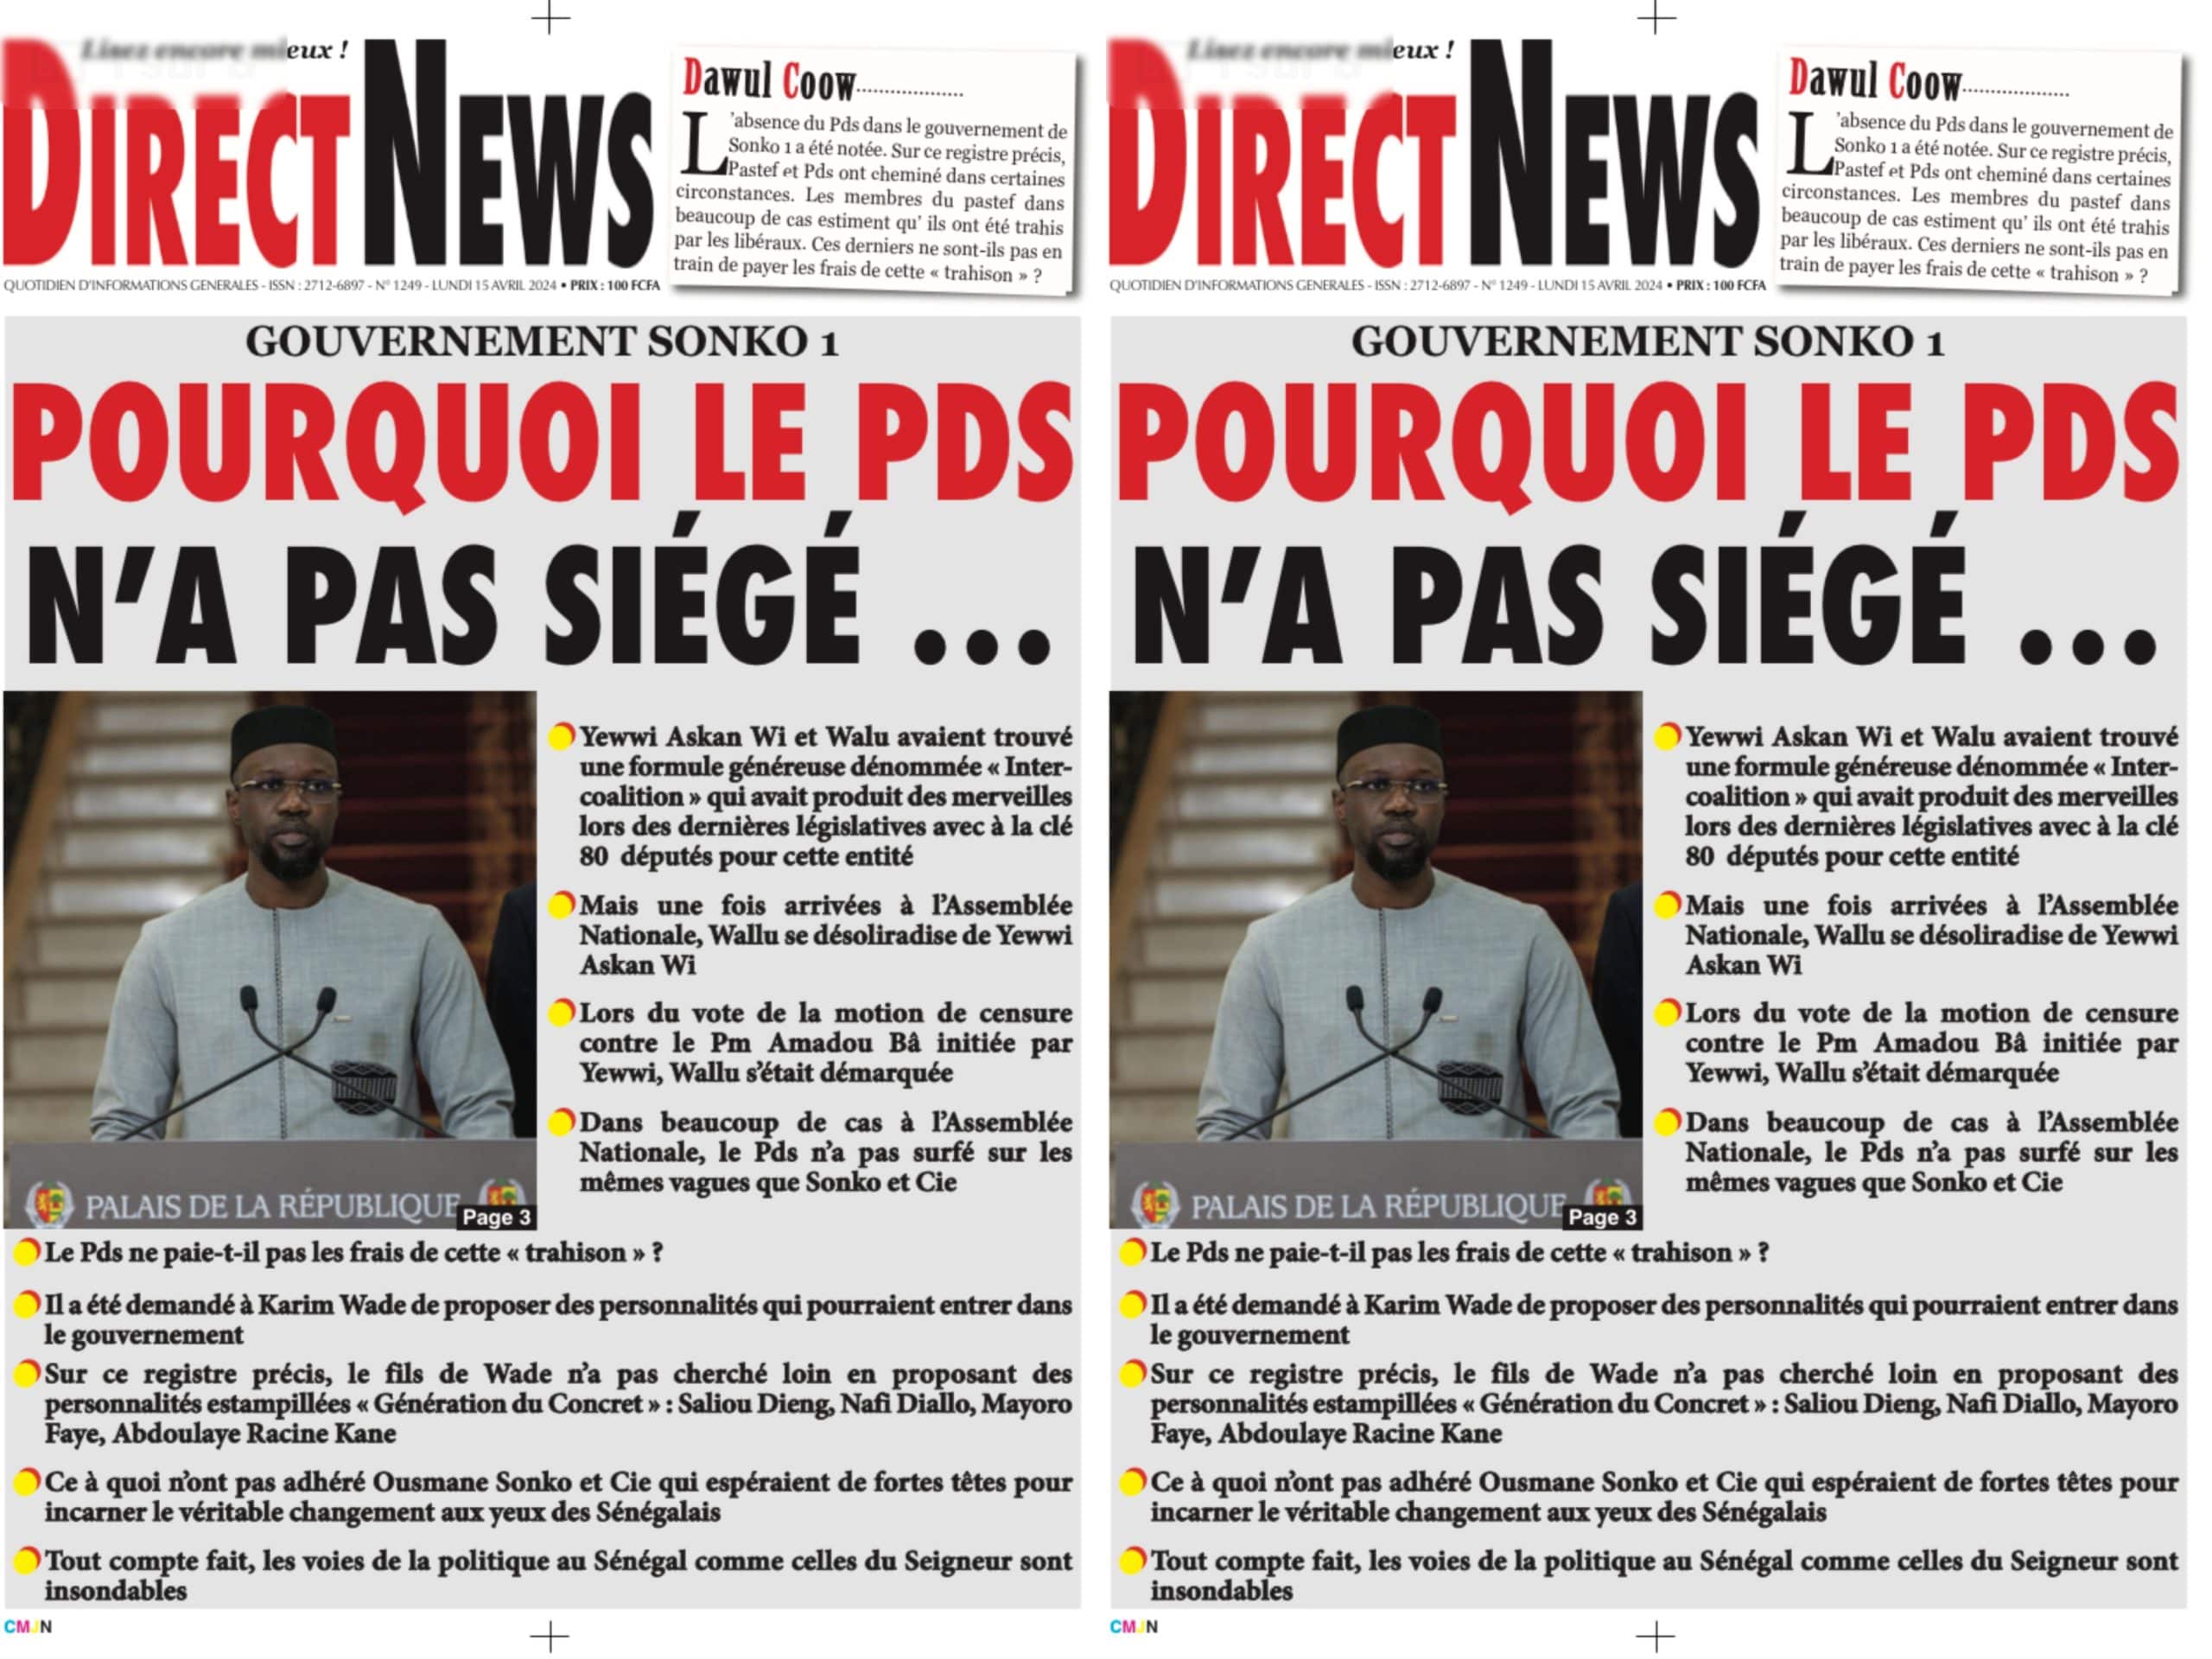 Urgent : Le PDS porte plainte contre Direct News pour "diffamation"